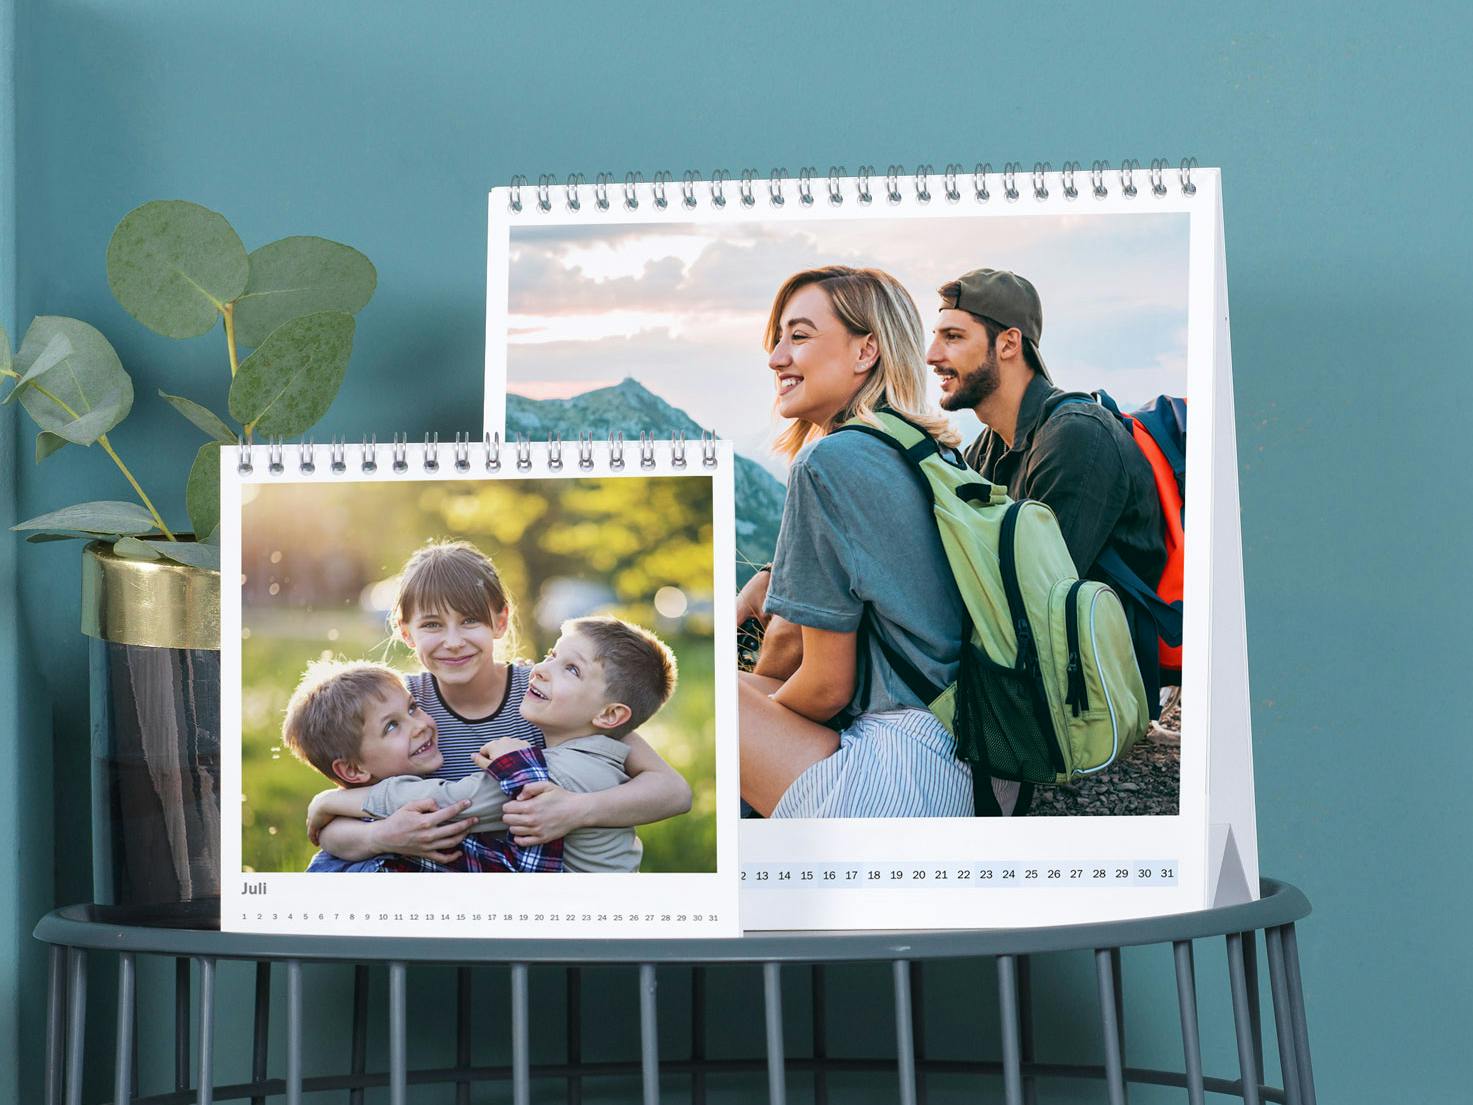 Calendarios de mesa personalizados grandes & pequeños con fotos de unos niños y una pareja joven